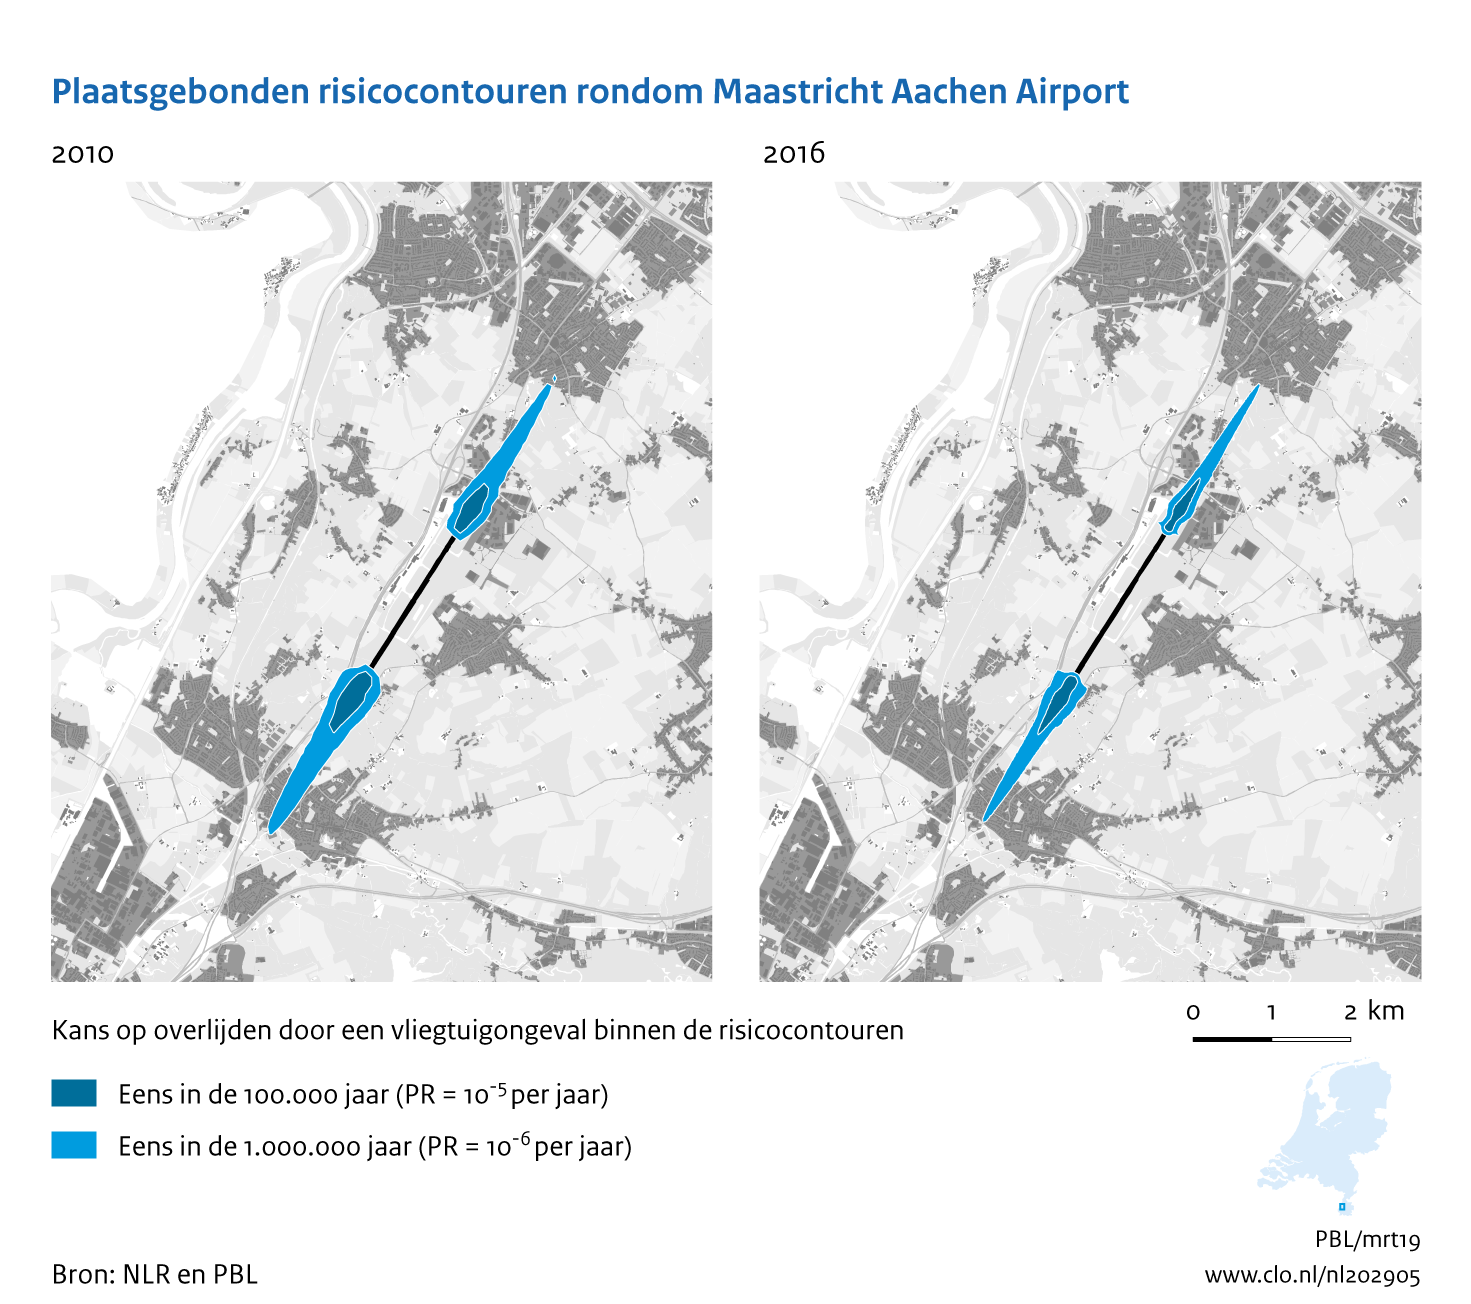 Figuur Plaatsgebonden risicocontouren rondom Maastricht Aachen Airport, 2010-2016. In de rest van de tekst wordt deze figuur uitgebreider uitgelegd.